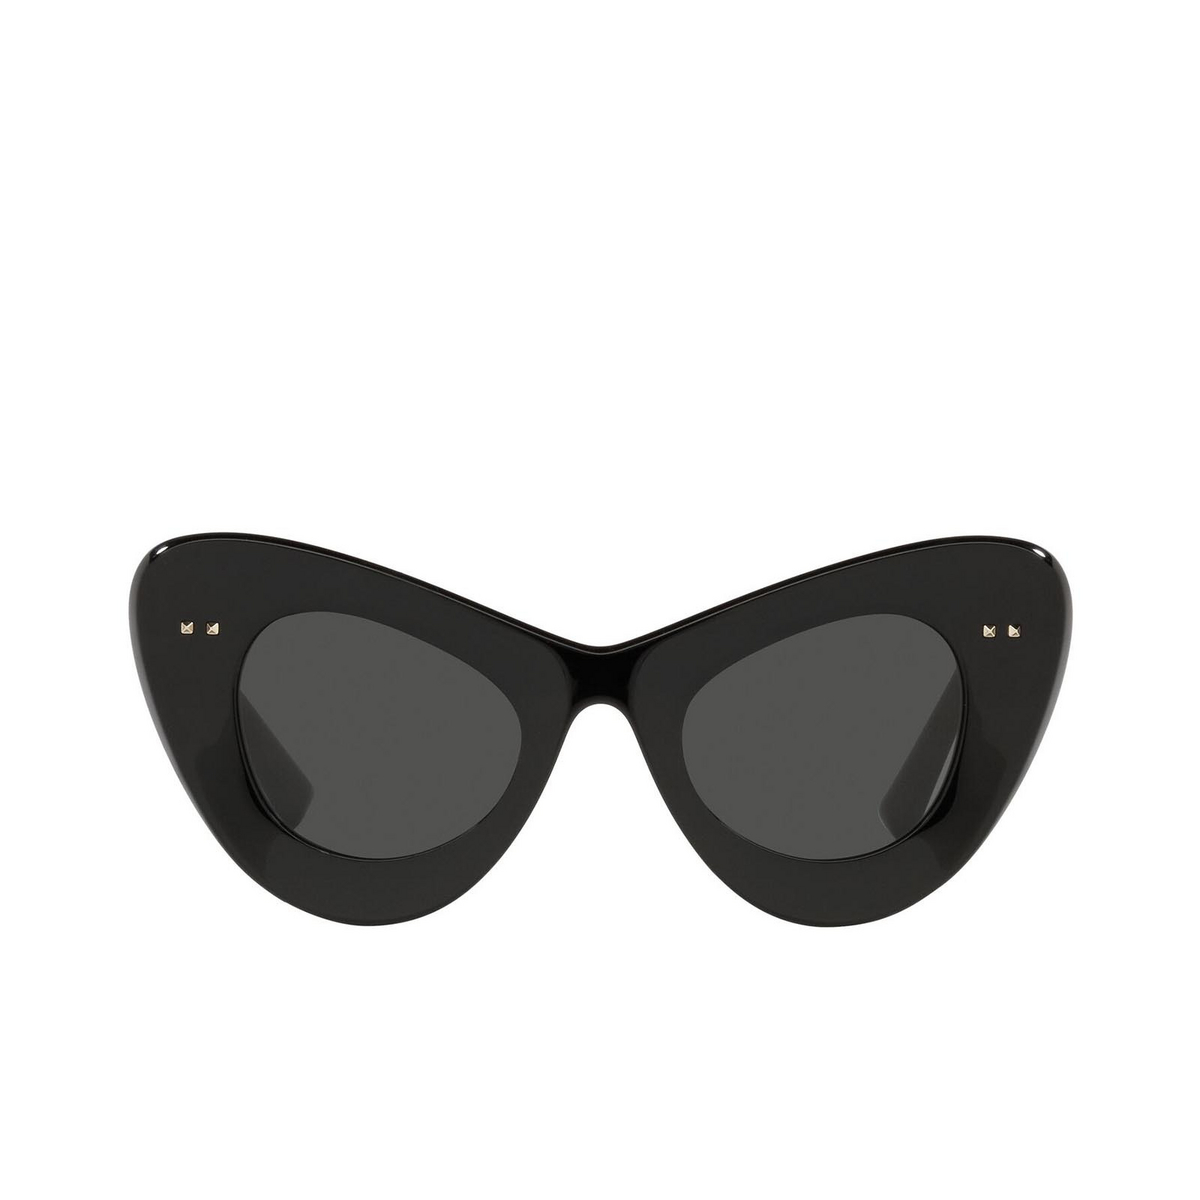 Valentino® Sunglasses: VA4090 color Black 500187 - front view.